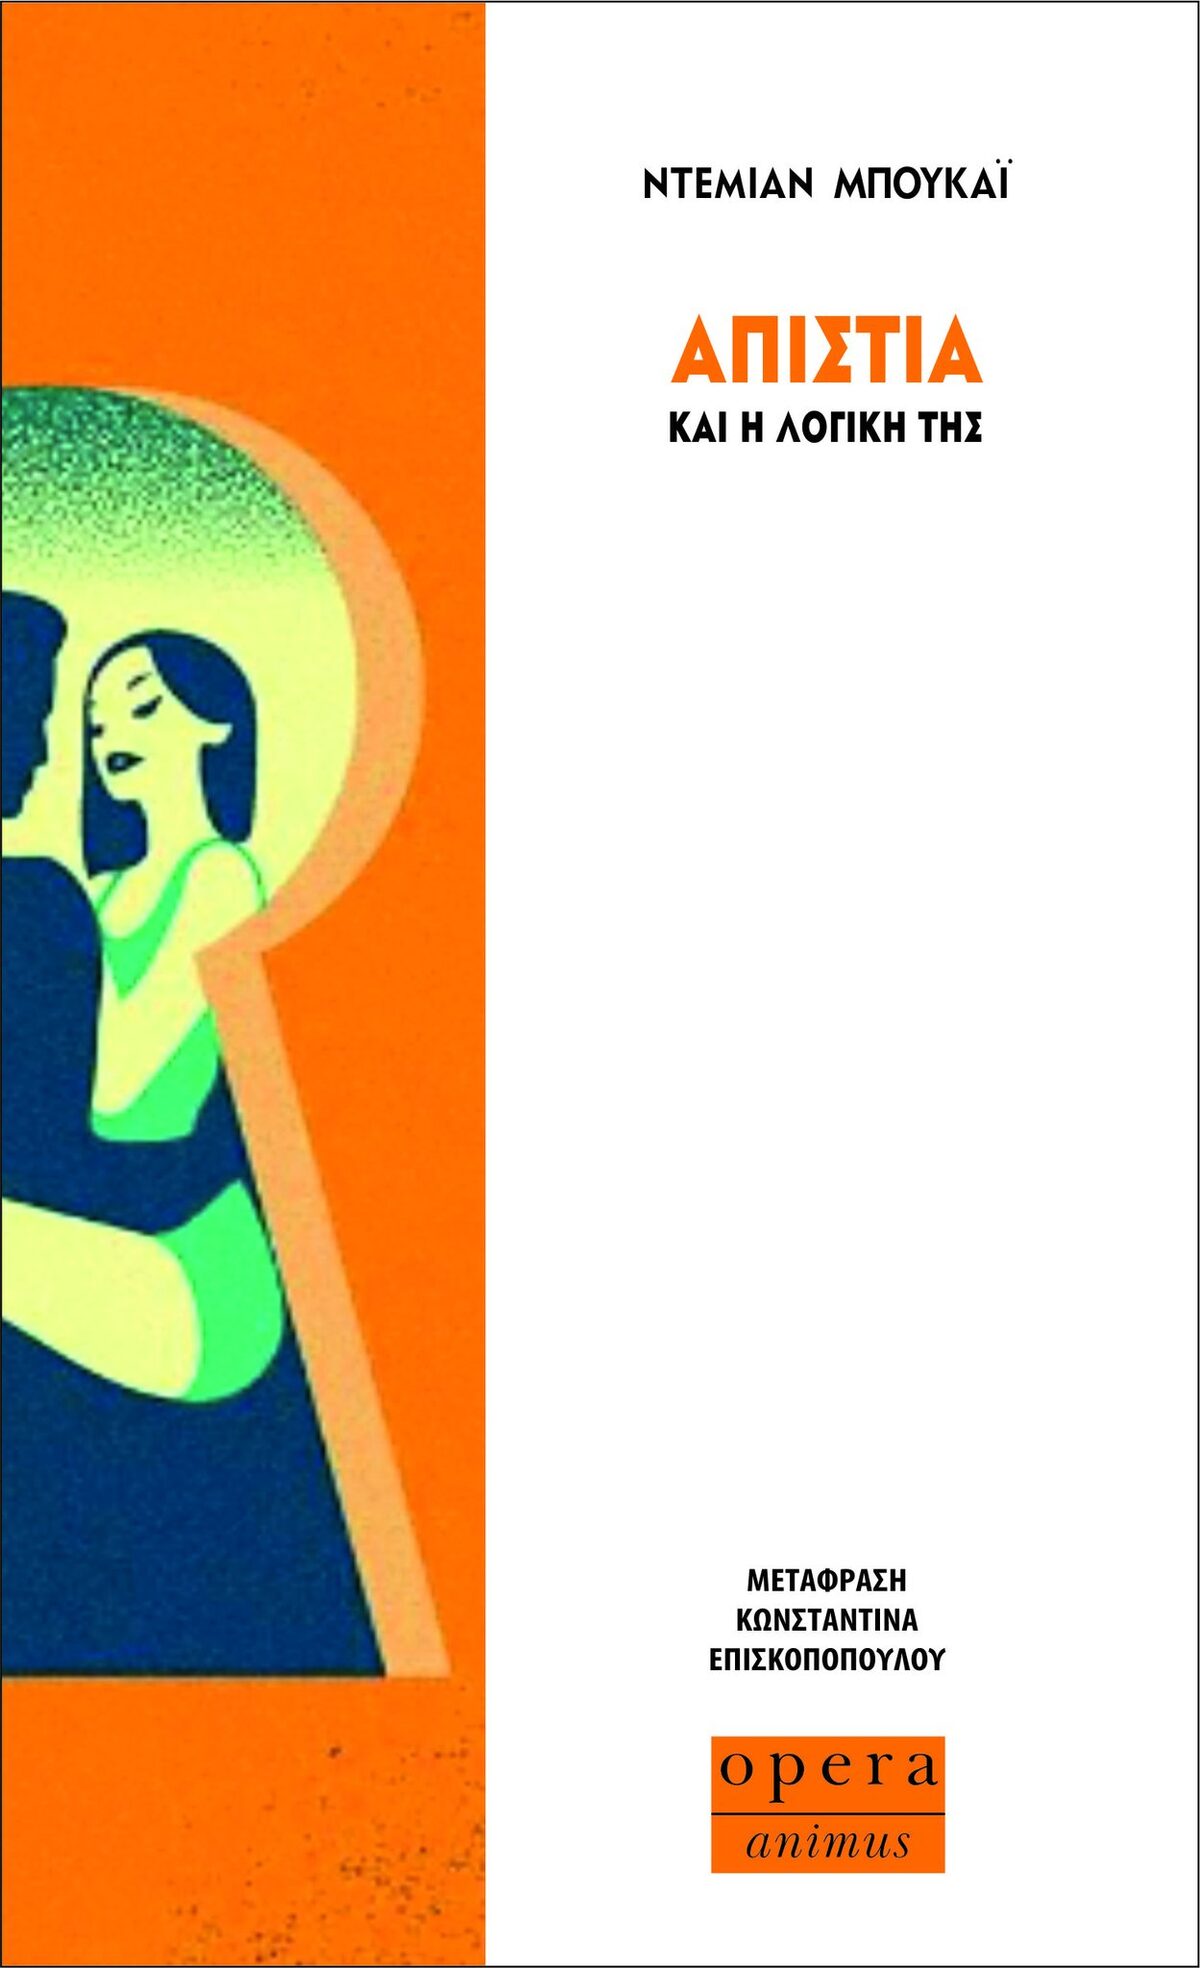 Το βιβλίο του Ντεμιάν Μπουκάι κυκλοφόρησε πρόσφατα από τις εκδόσεις opera